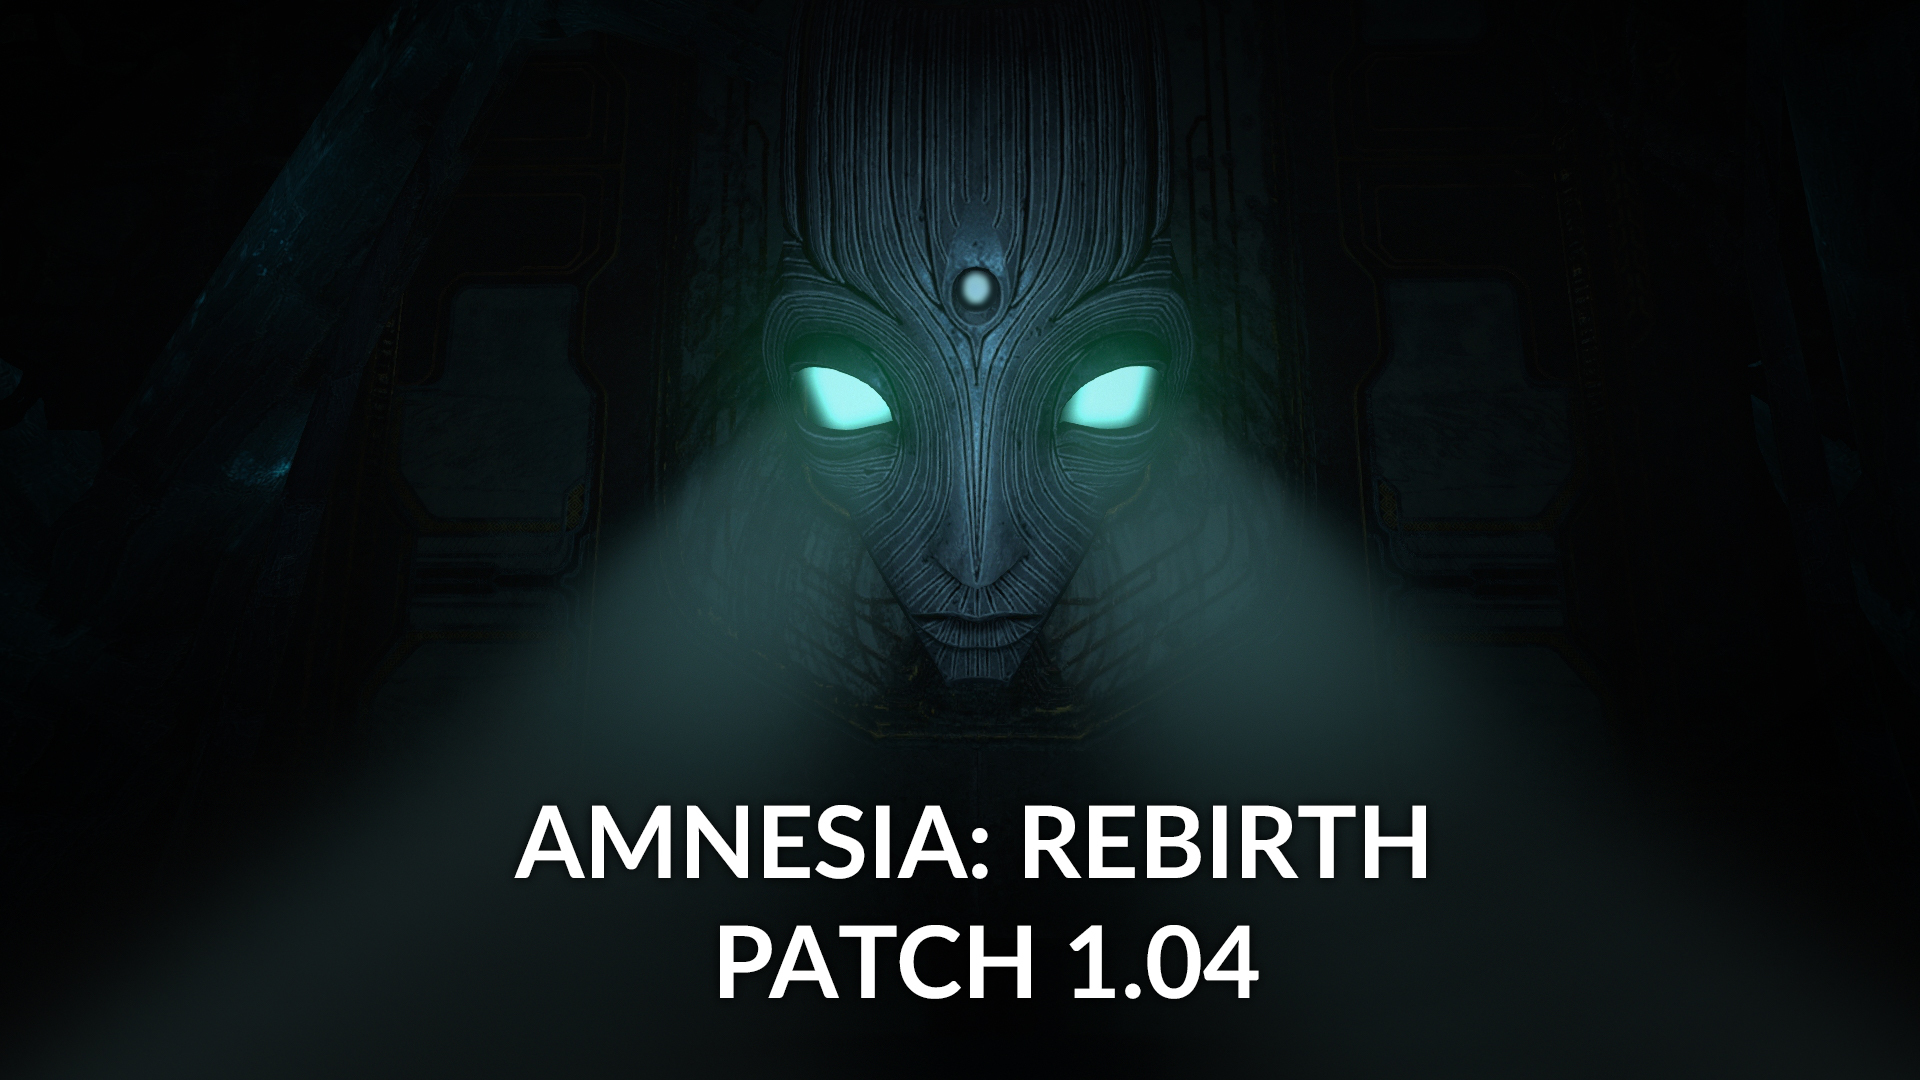 Riverbond e Amnesia: Rebirth são os jogos grátis da semana na Epic Games  Store - GameBlast